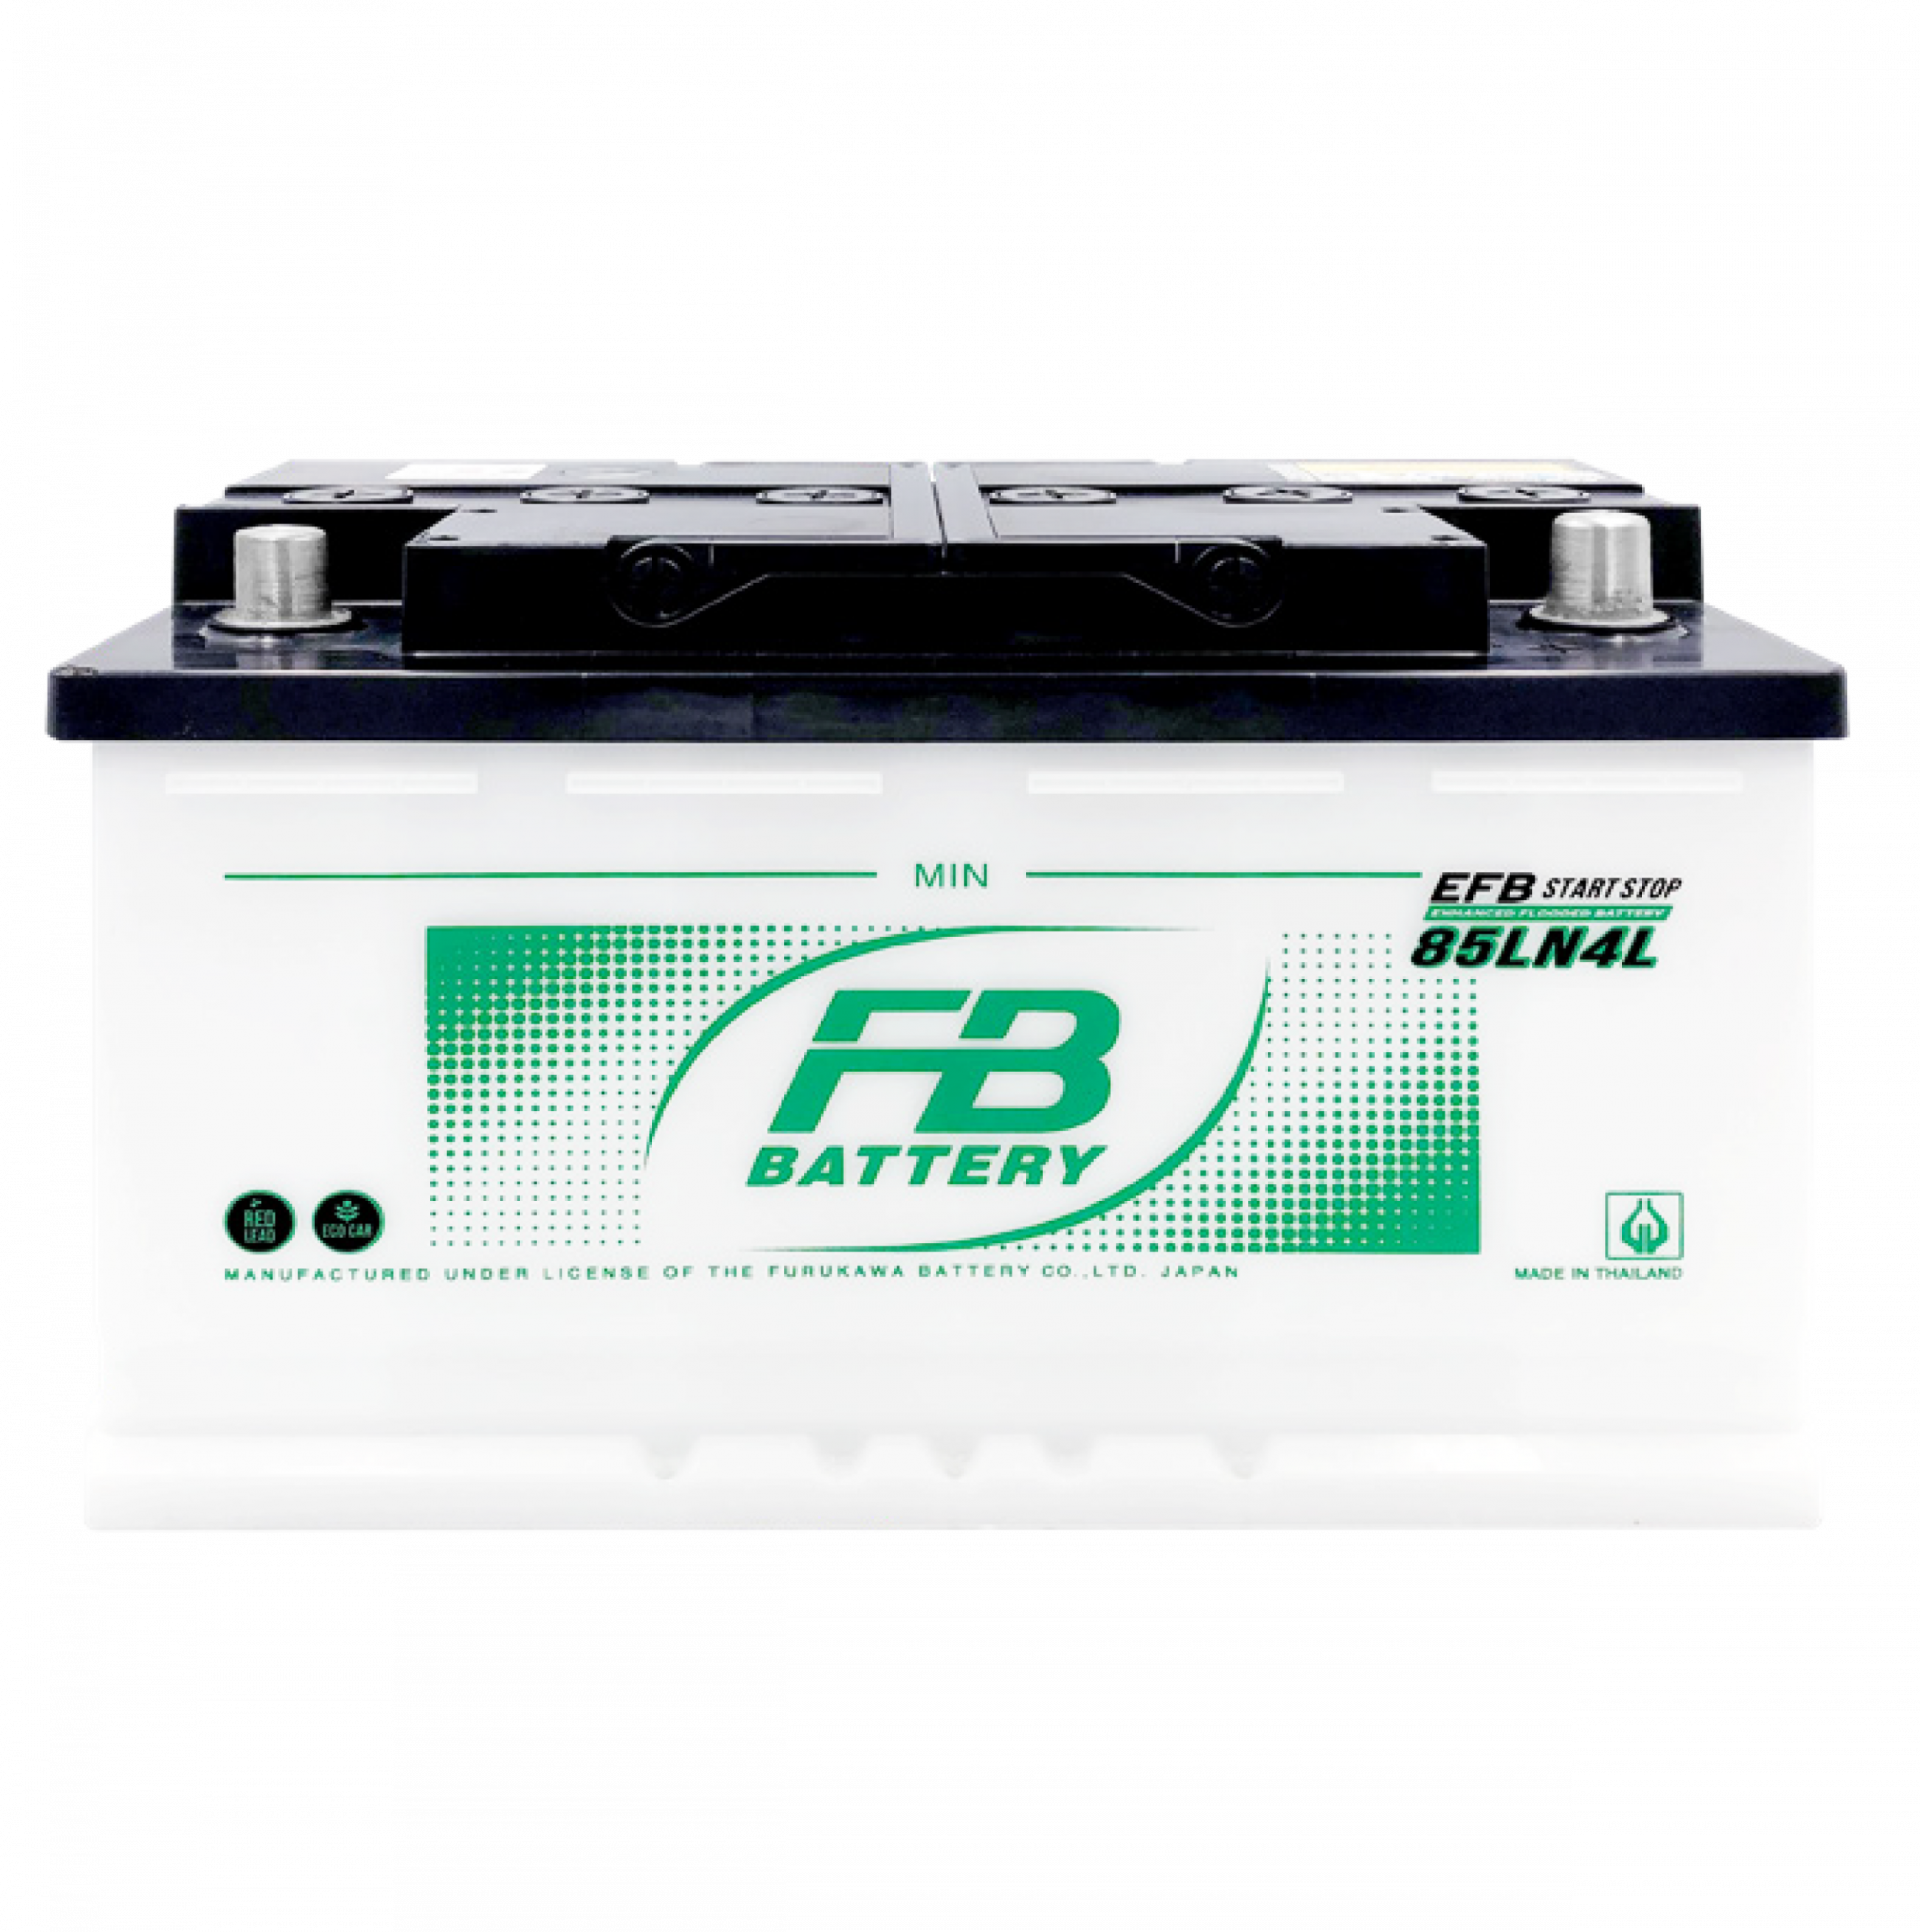 Battery FB EFB 85LN4 (Enhanced Flooded Battery Type) 12V 85Ah